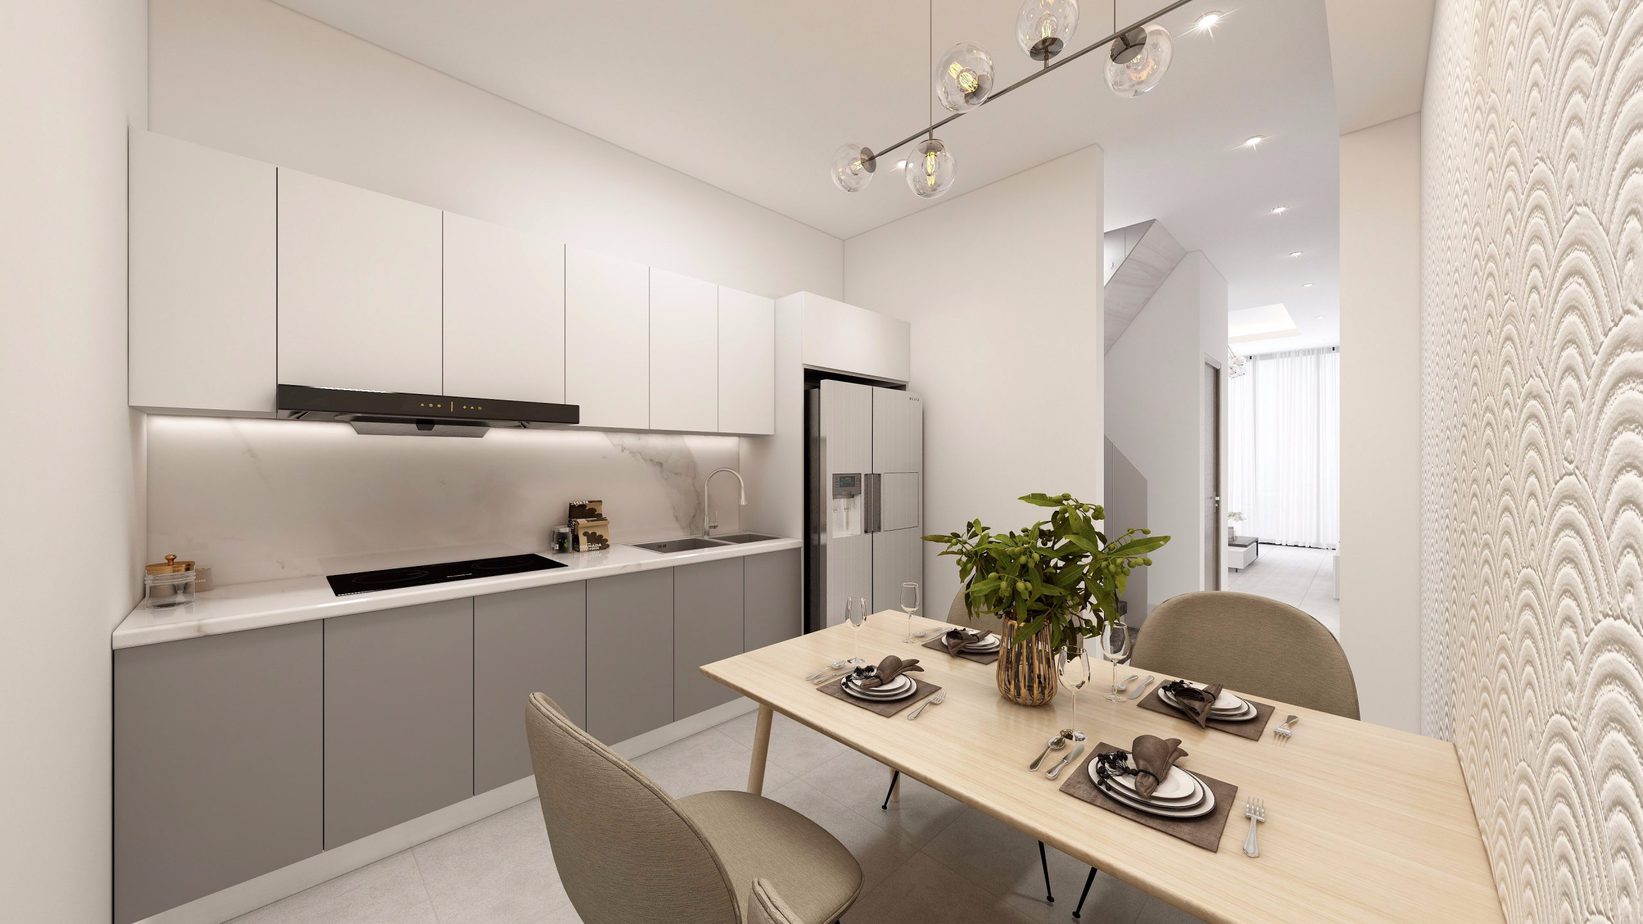 Tủ bếp nổi bật nhờ được phối 2 màu trắng - ghi thanh lịch, giúp mang lại vẻ đẹp hiện đại cho căn bếp. 